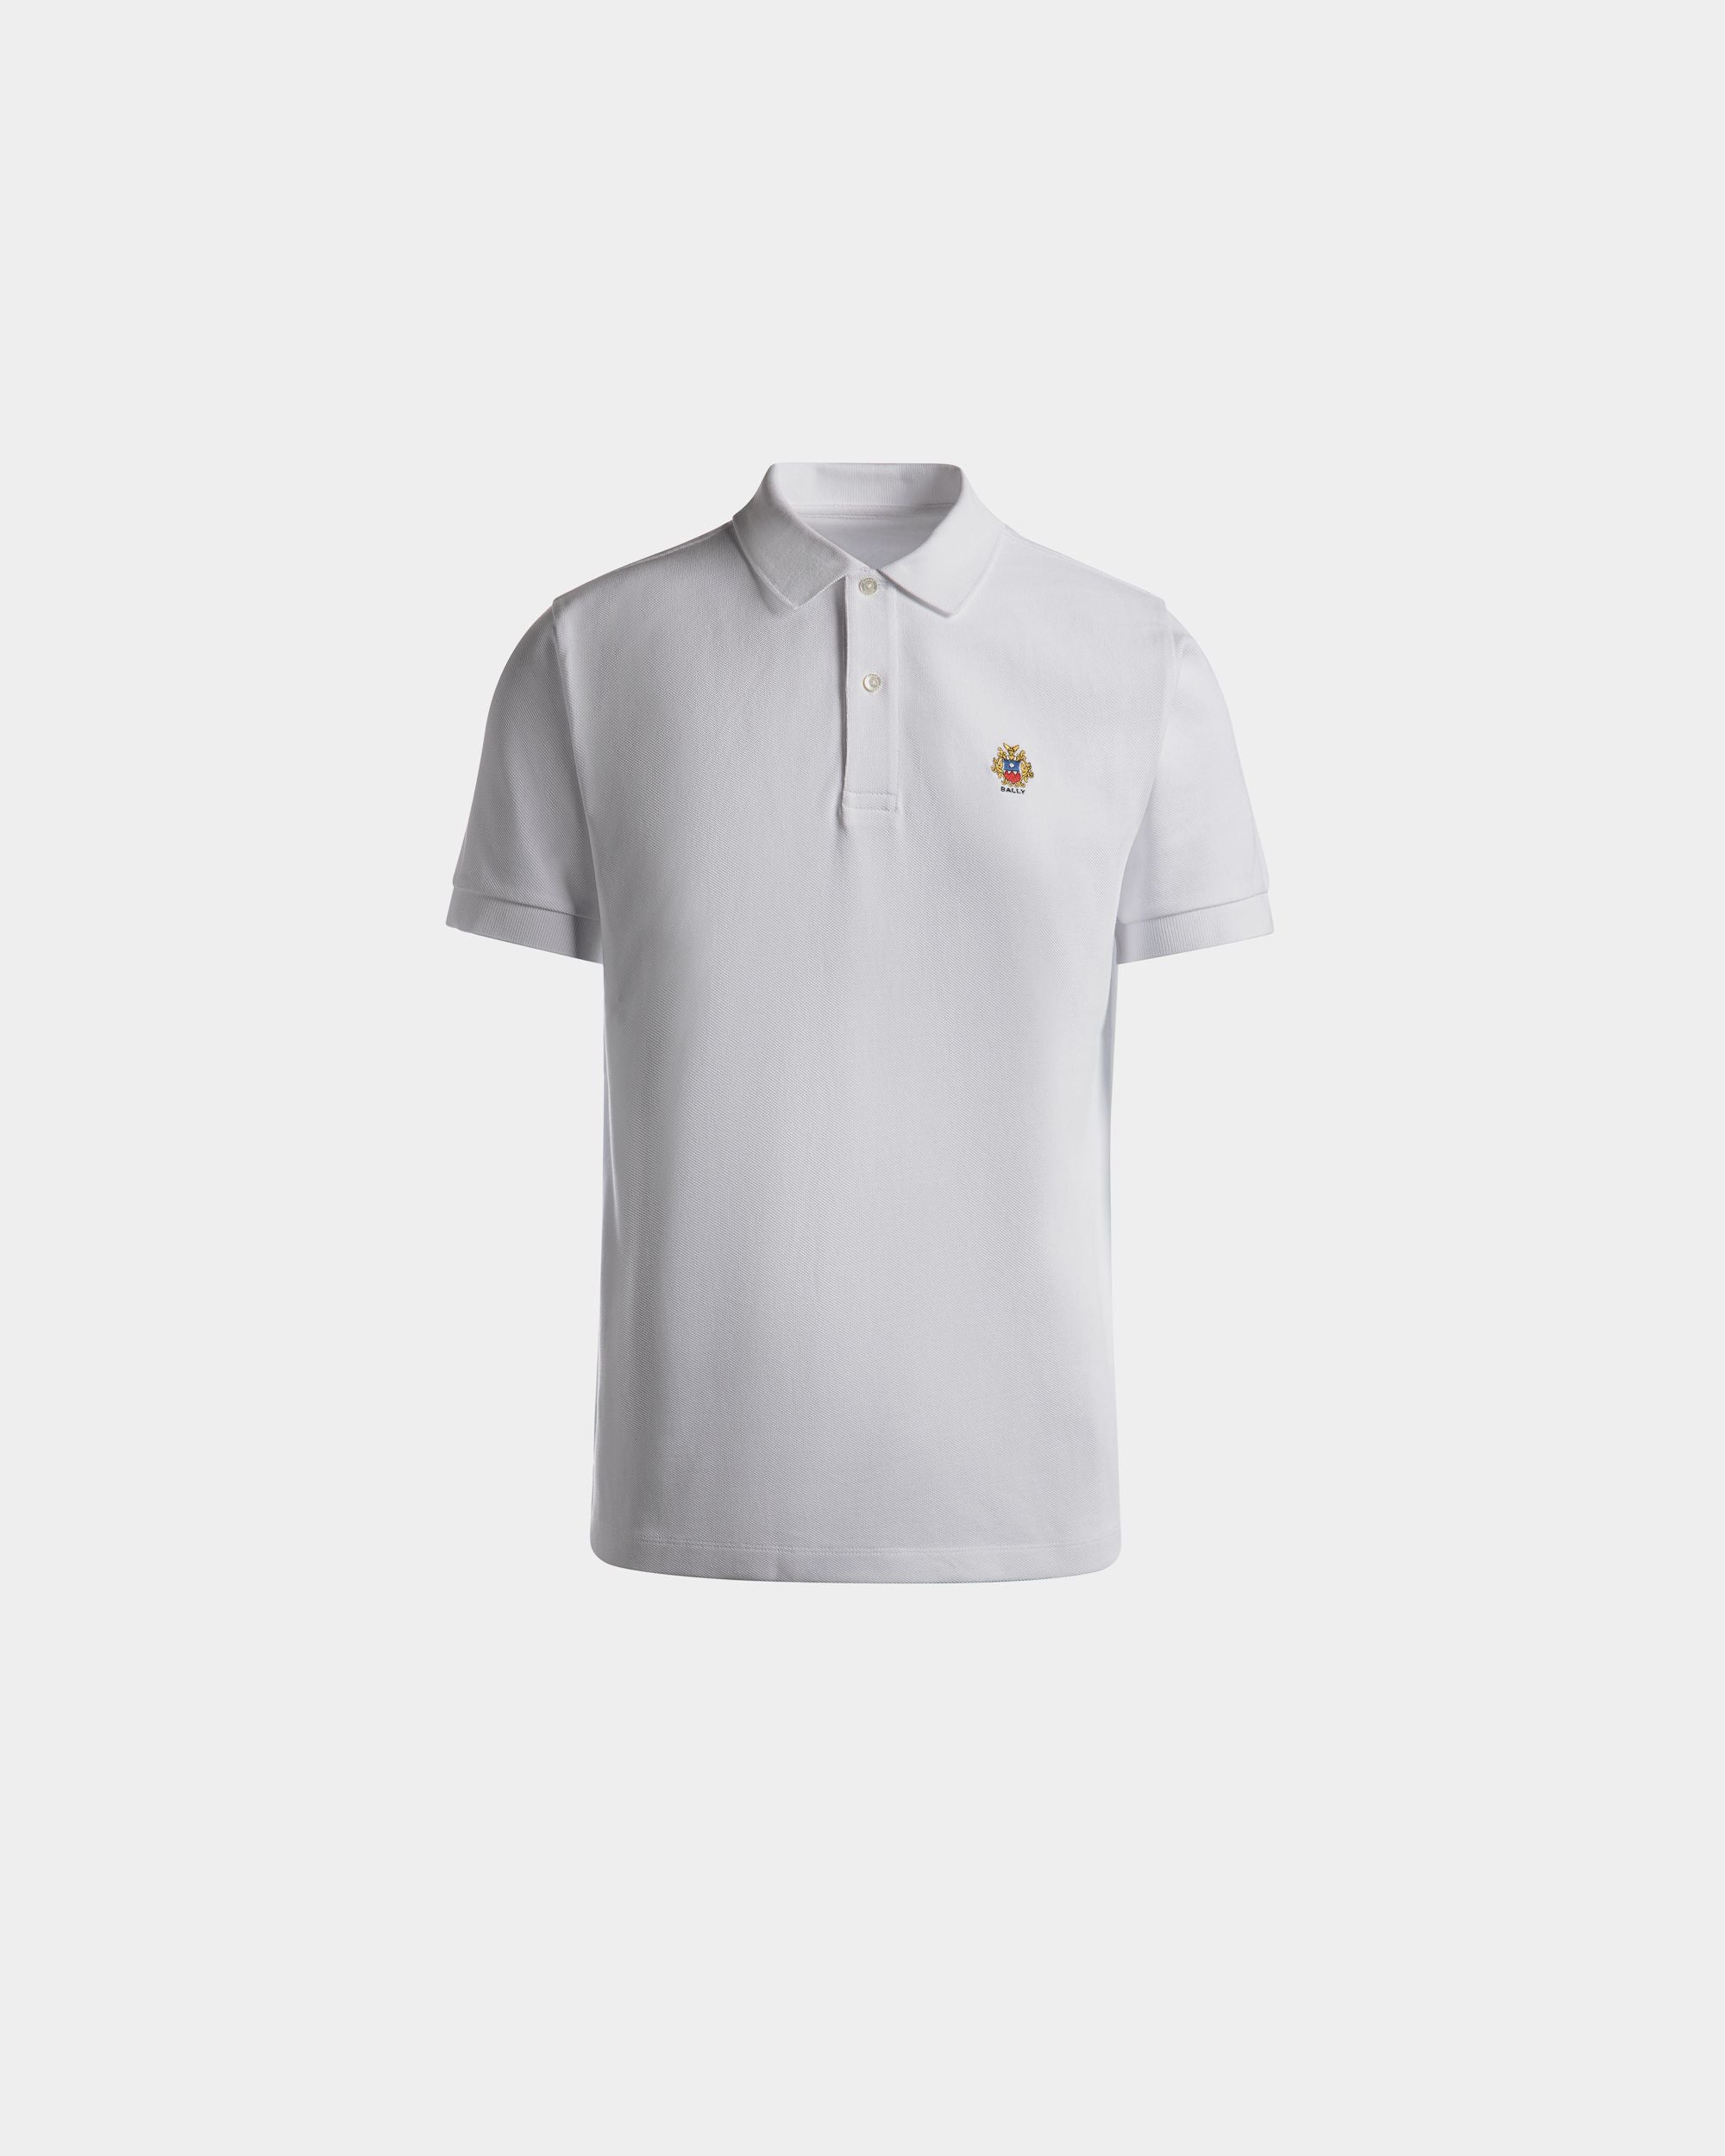 Poloshirt für Herren aus weißer Baumwolle | Bally | Still Life Vorderseite